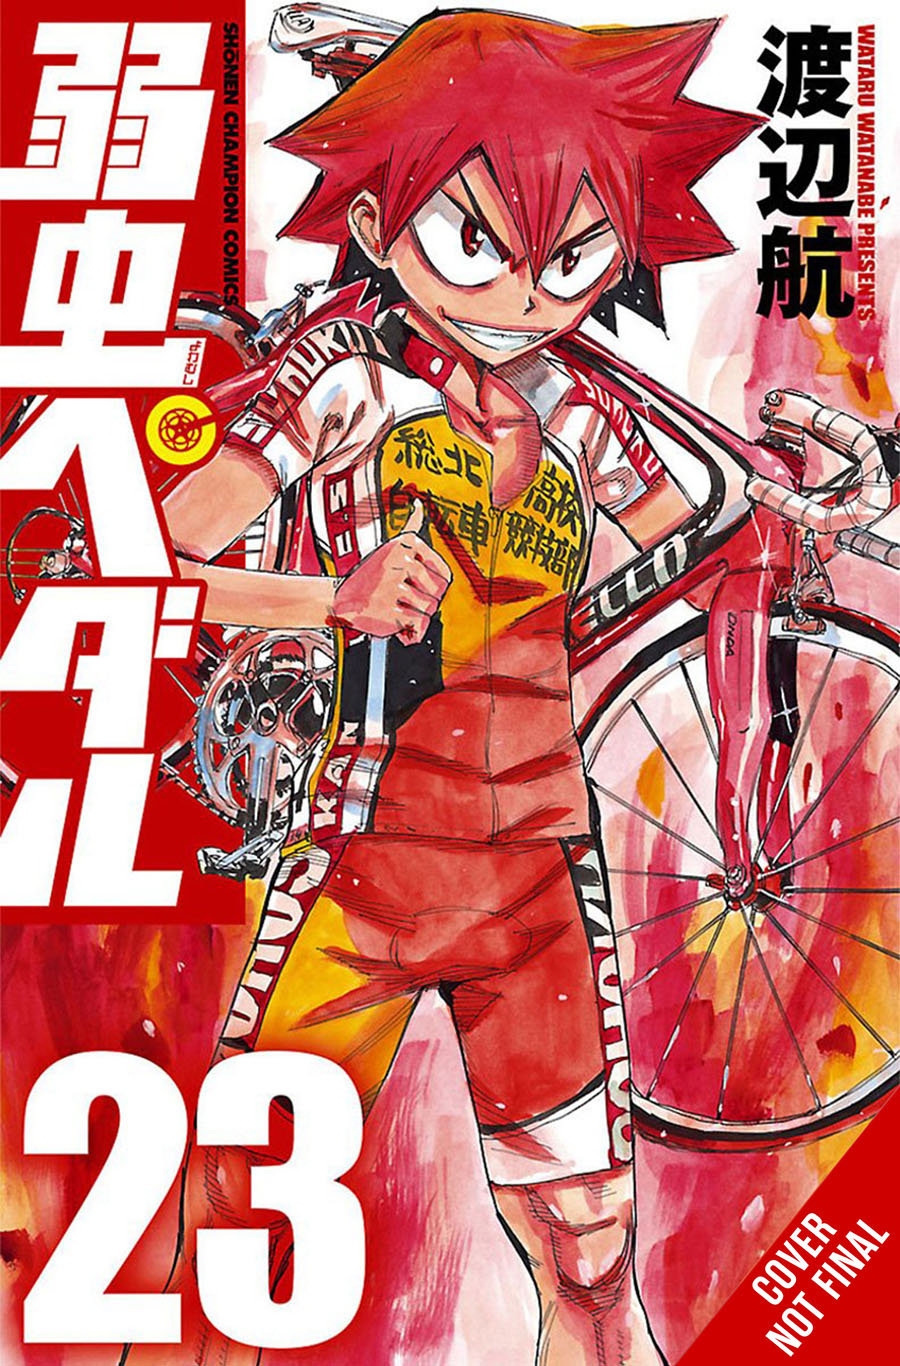 Yowamushi Pedal Vol 23 GN